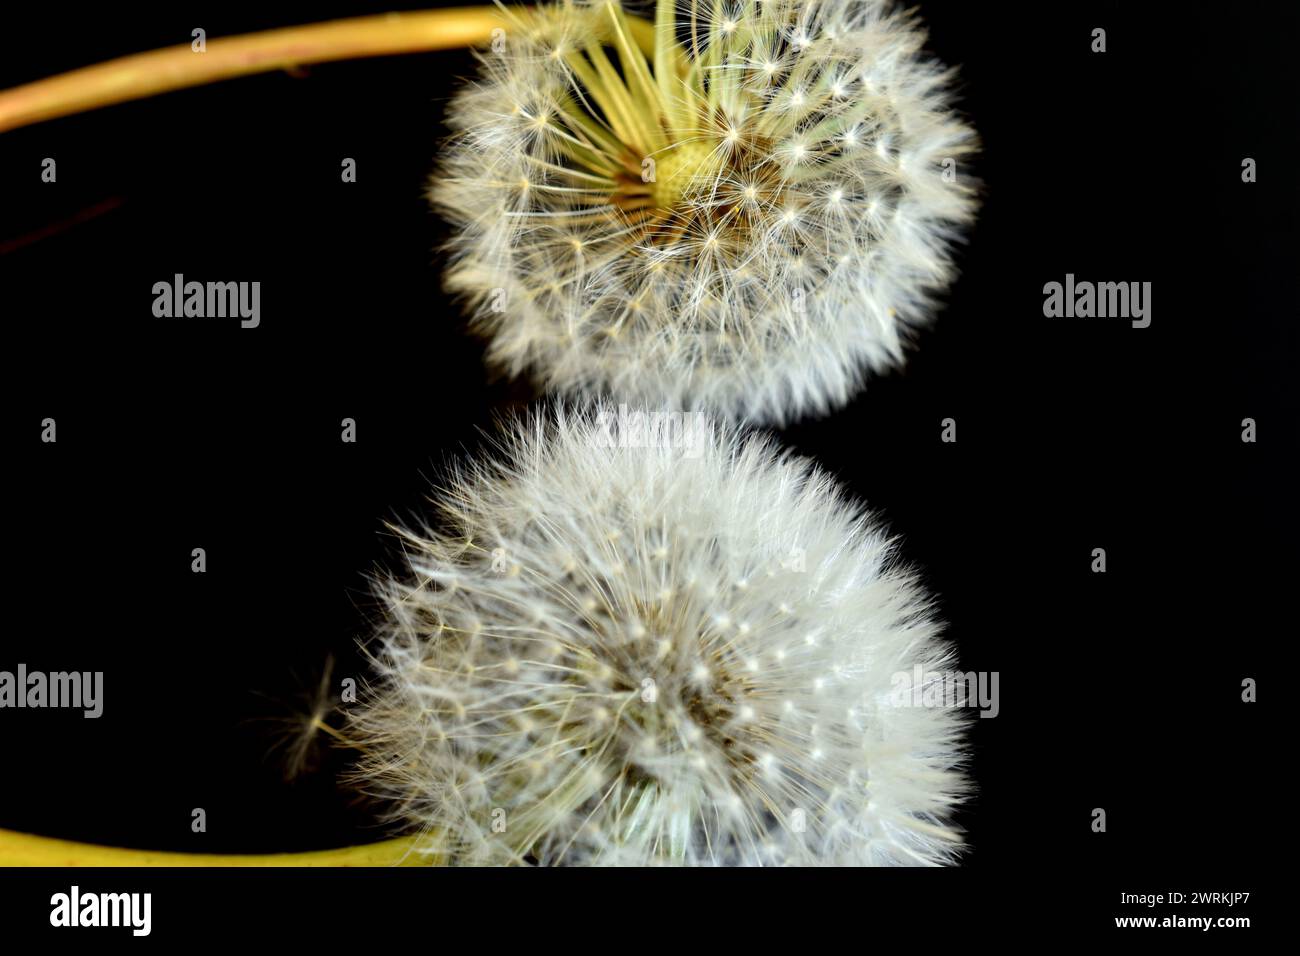 Sur l'image, sur un fond sombre, deux fleurs de pissenlit, dans lesquelles les graines et les parapluies ont mûri, forment des boules blanches. Banque D'Images